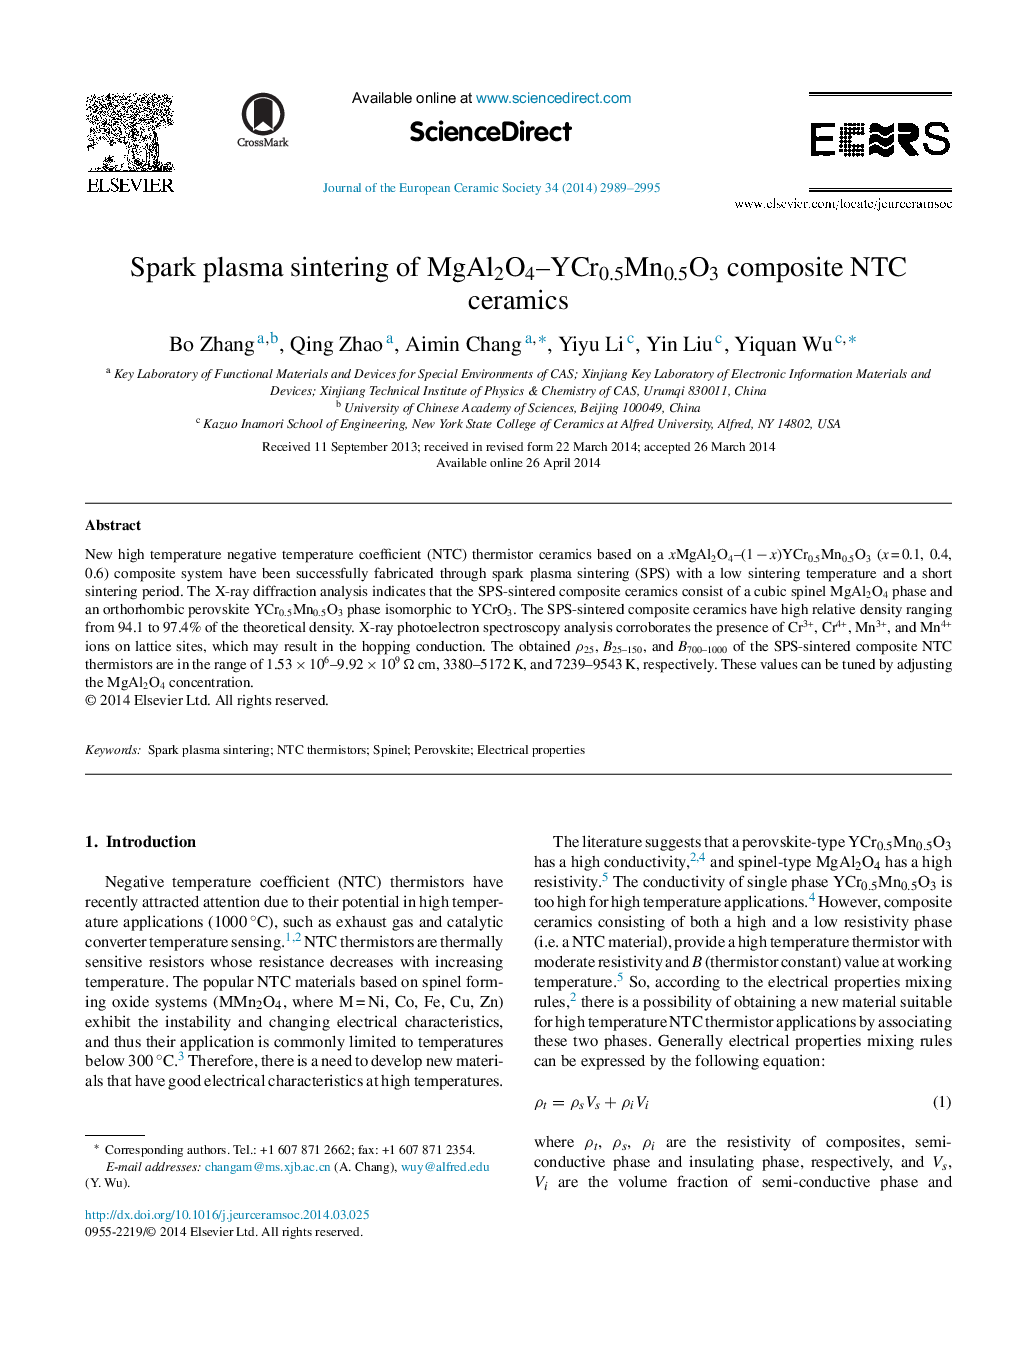 Spark plasma sintering of MgAl2O4–YCr0.5Mn0.5O3 composite NTC ceramics